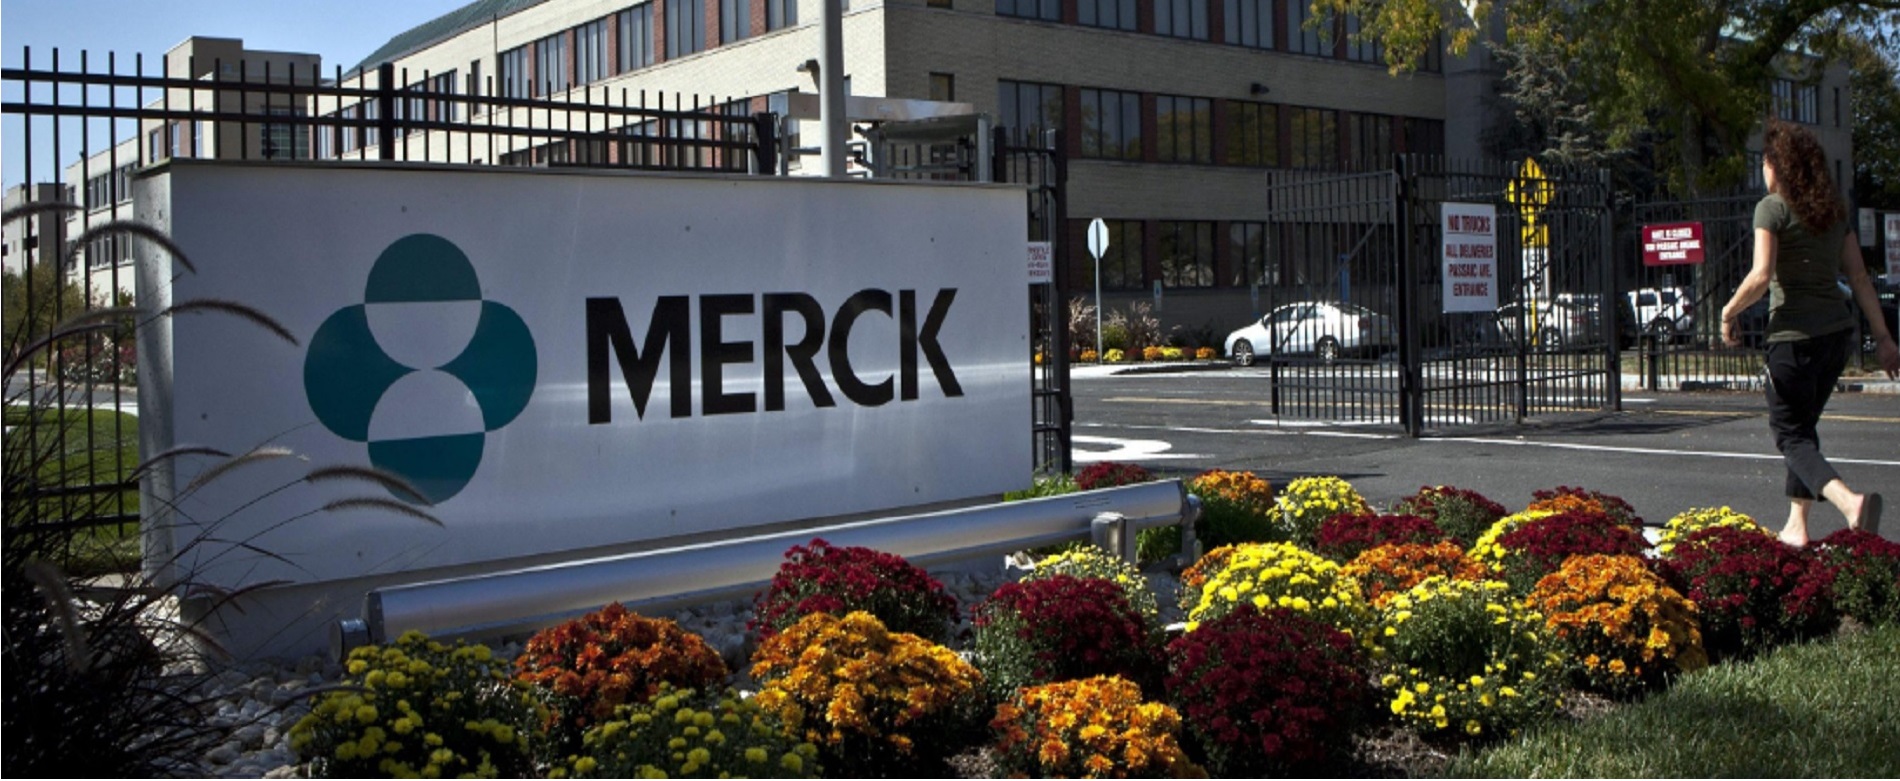 Η Merck επενδύει σε ειδική πλατφόρμα για να αντιμετωπίσει την έλλειψη φαρμάκων